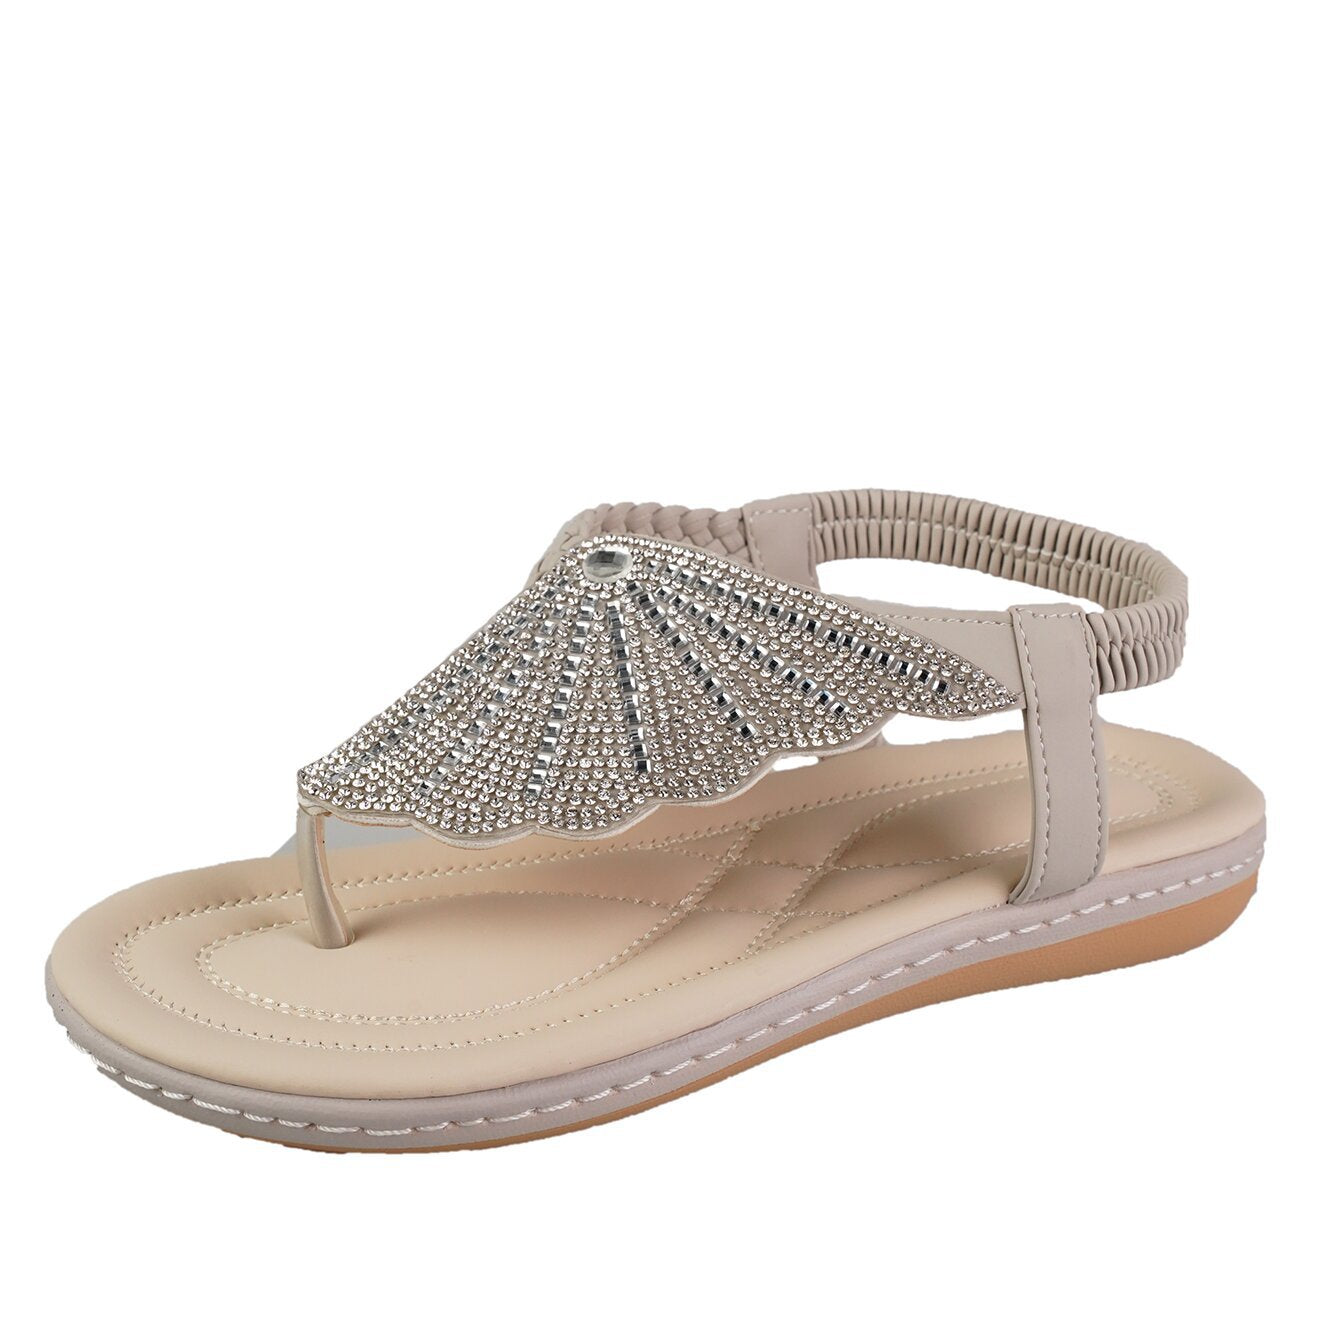 새로운 라인 석 쉘 플립 플롭 샌들 여성을위한 여름 해변 신발 패션 캐주얼 로우 힐 플랫 슬라이드 슬리퍼